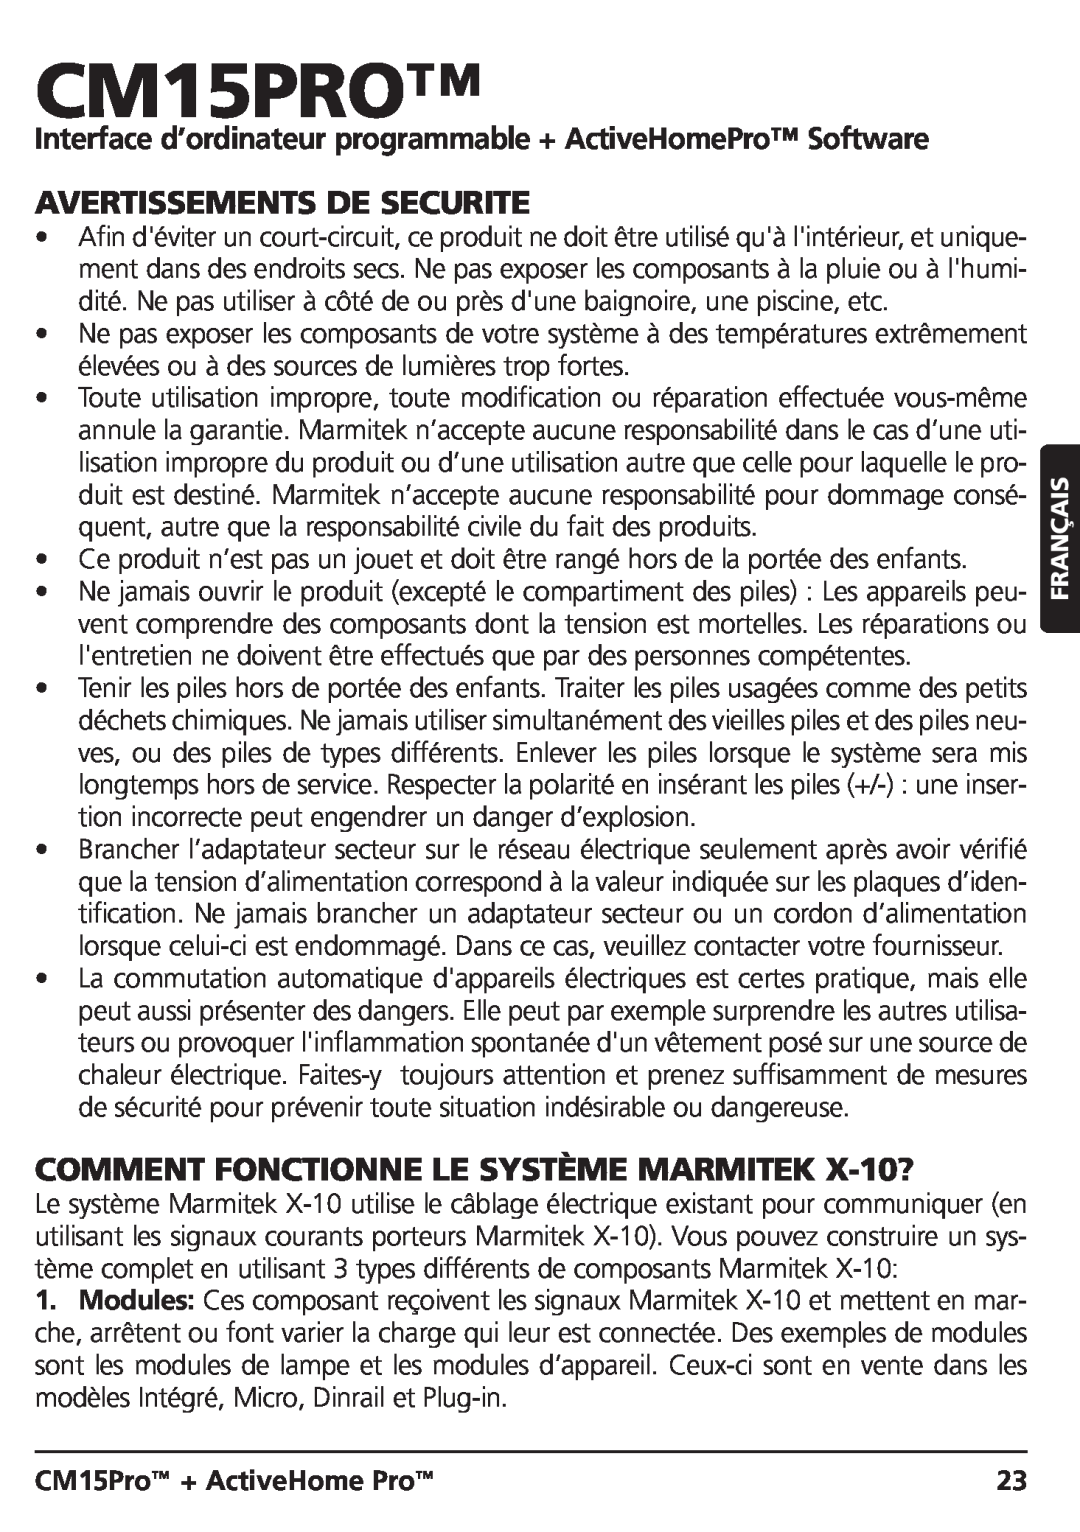 Marmitek CM15PRO manual Avertissements De Securite, COMMENT FONCTIONNE LE SYSTÈME MARMITEK X-10?, CM15Pro + ActiveHome Pro 